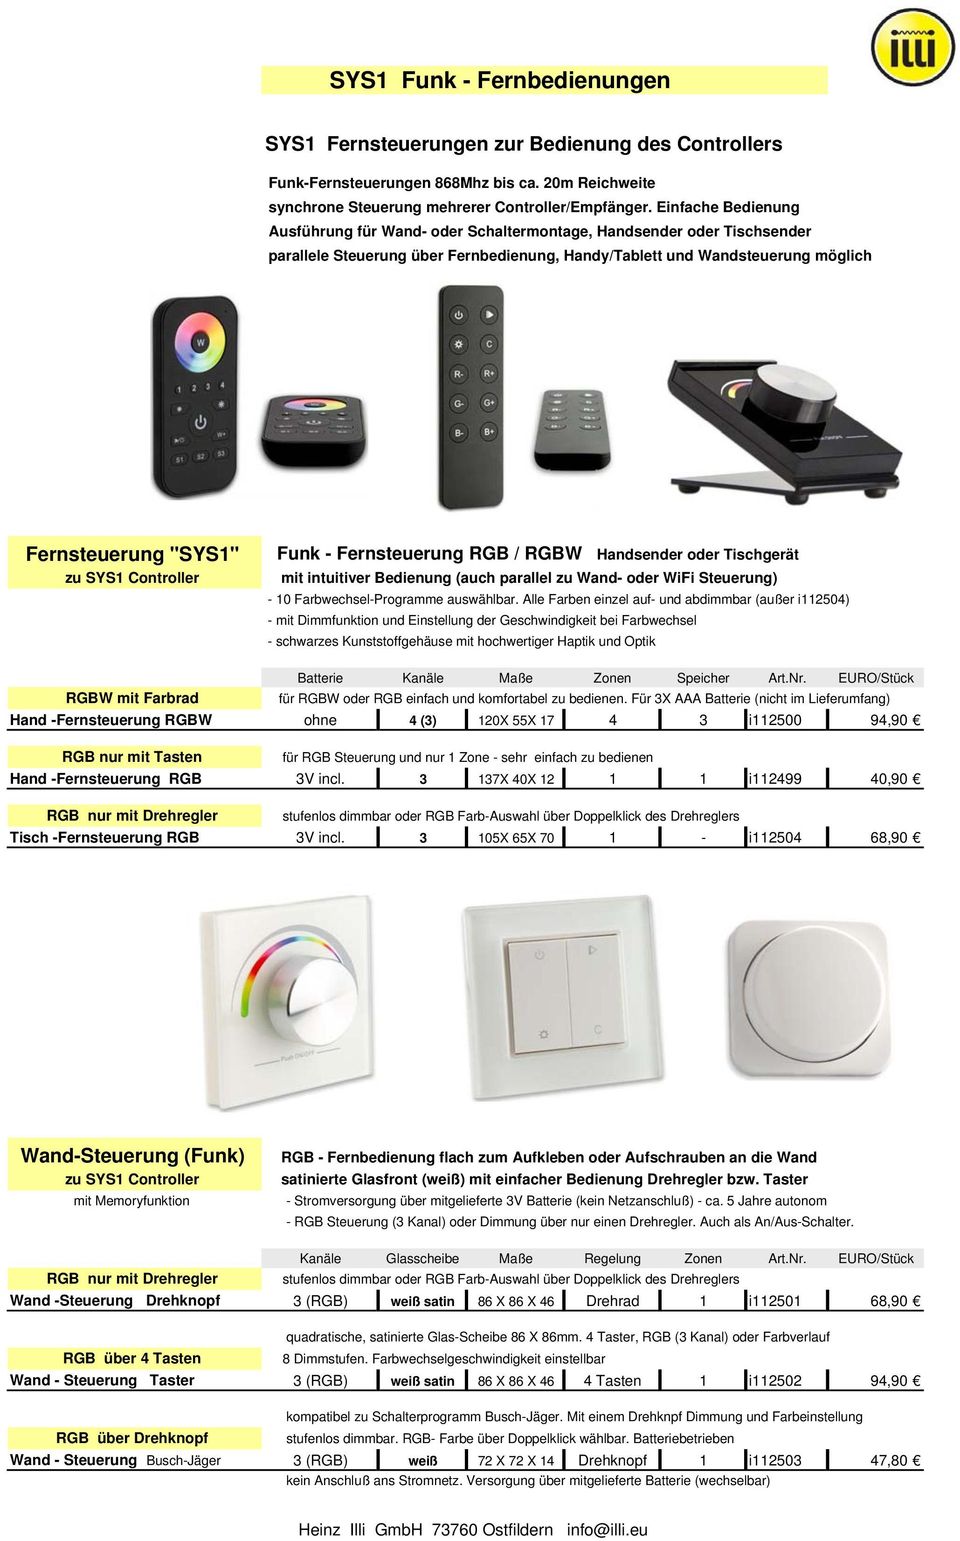 Fernsteuerung RGB / RGBW Handsender oder Tischgerät zu SYS1 Controller mit intuitiver Bedienung (auch parallel zu Wand- oder WiFi Steuerung) - 10 Farbwechsel-Programme auswählbar.